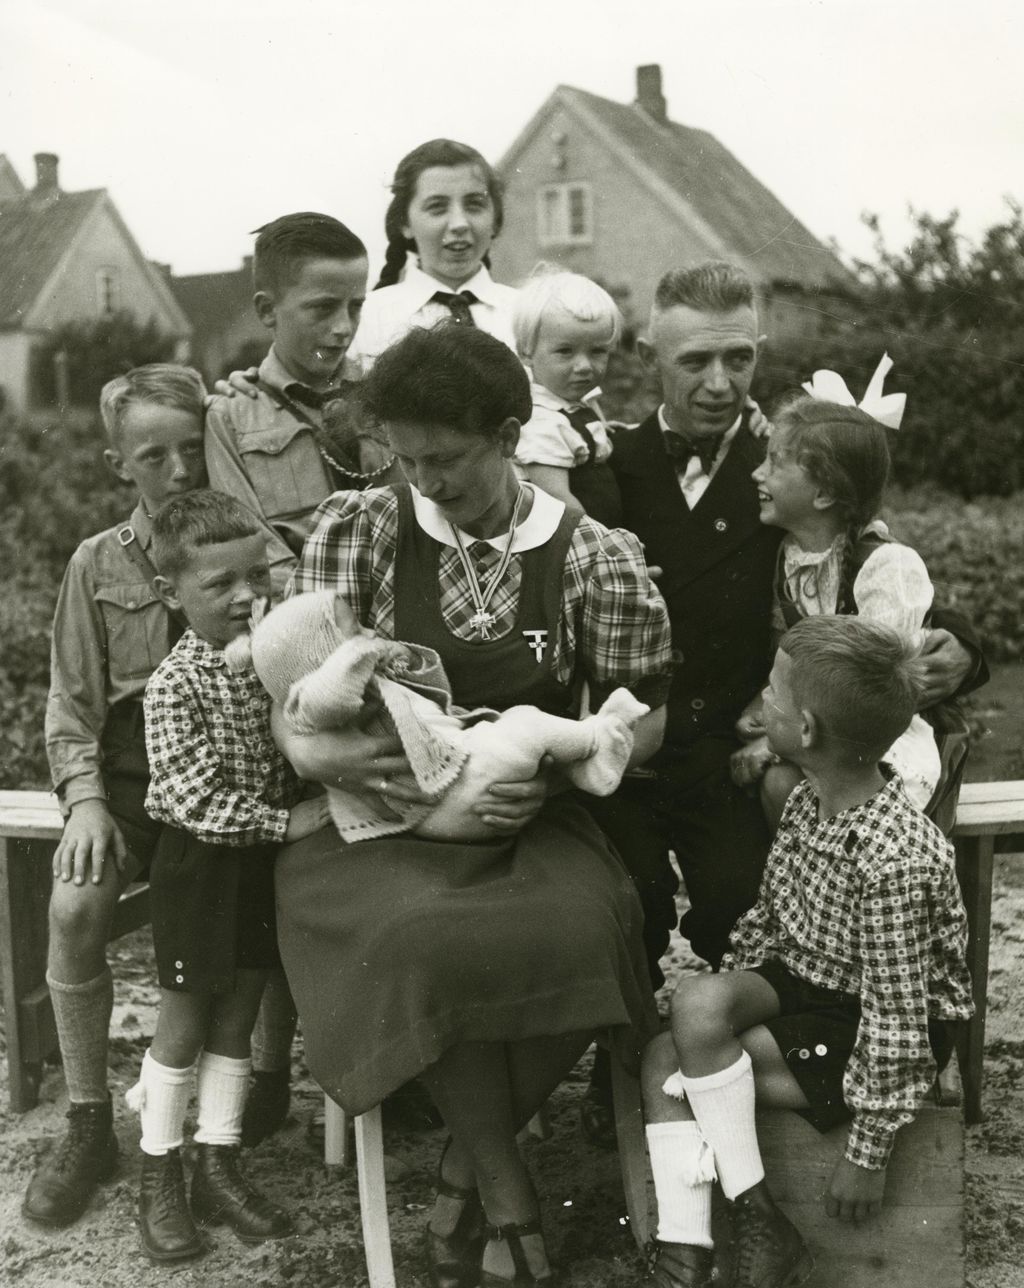 Exponat: Foto: Mutterkreuzträgerin mit ihrer Familie, 1940